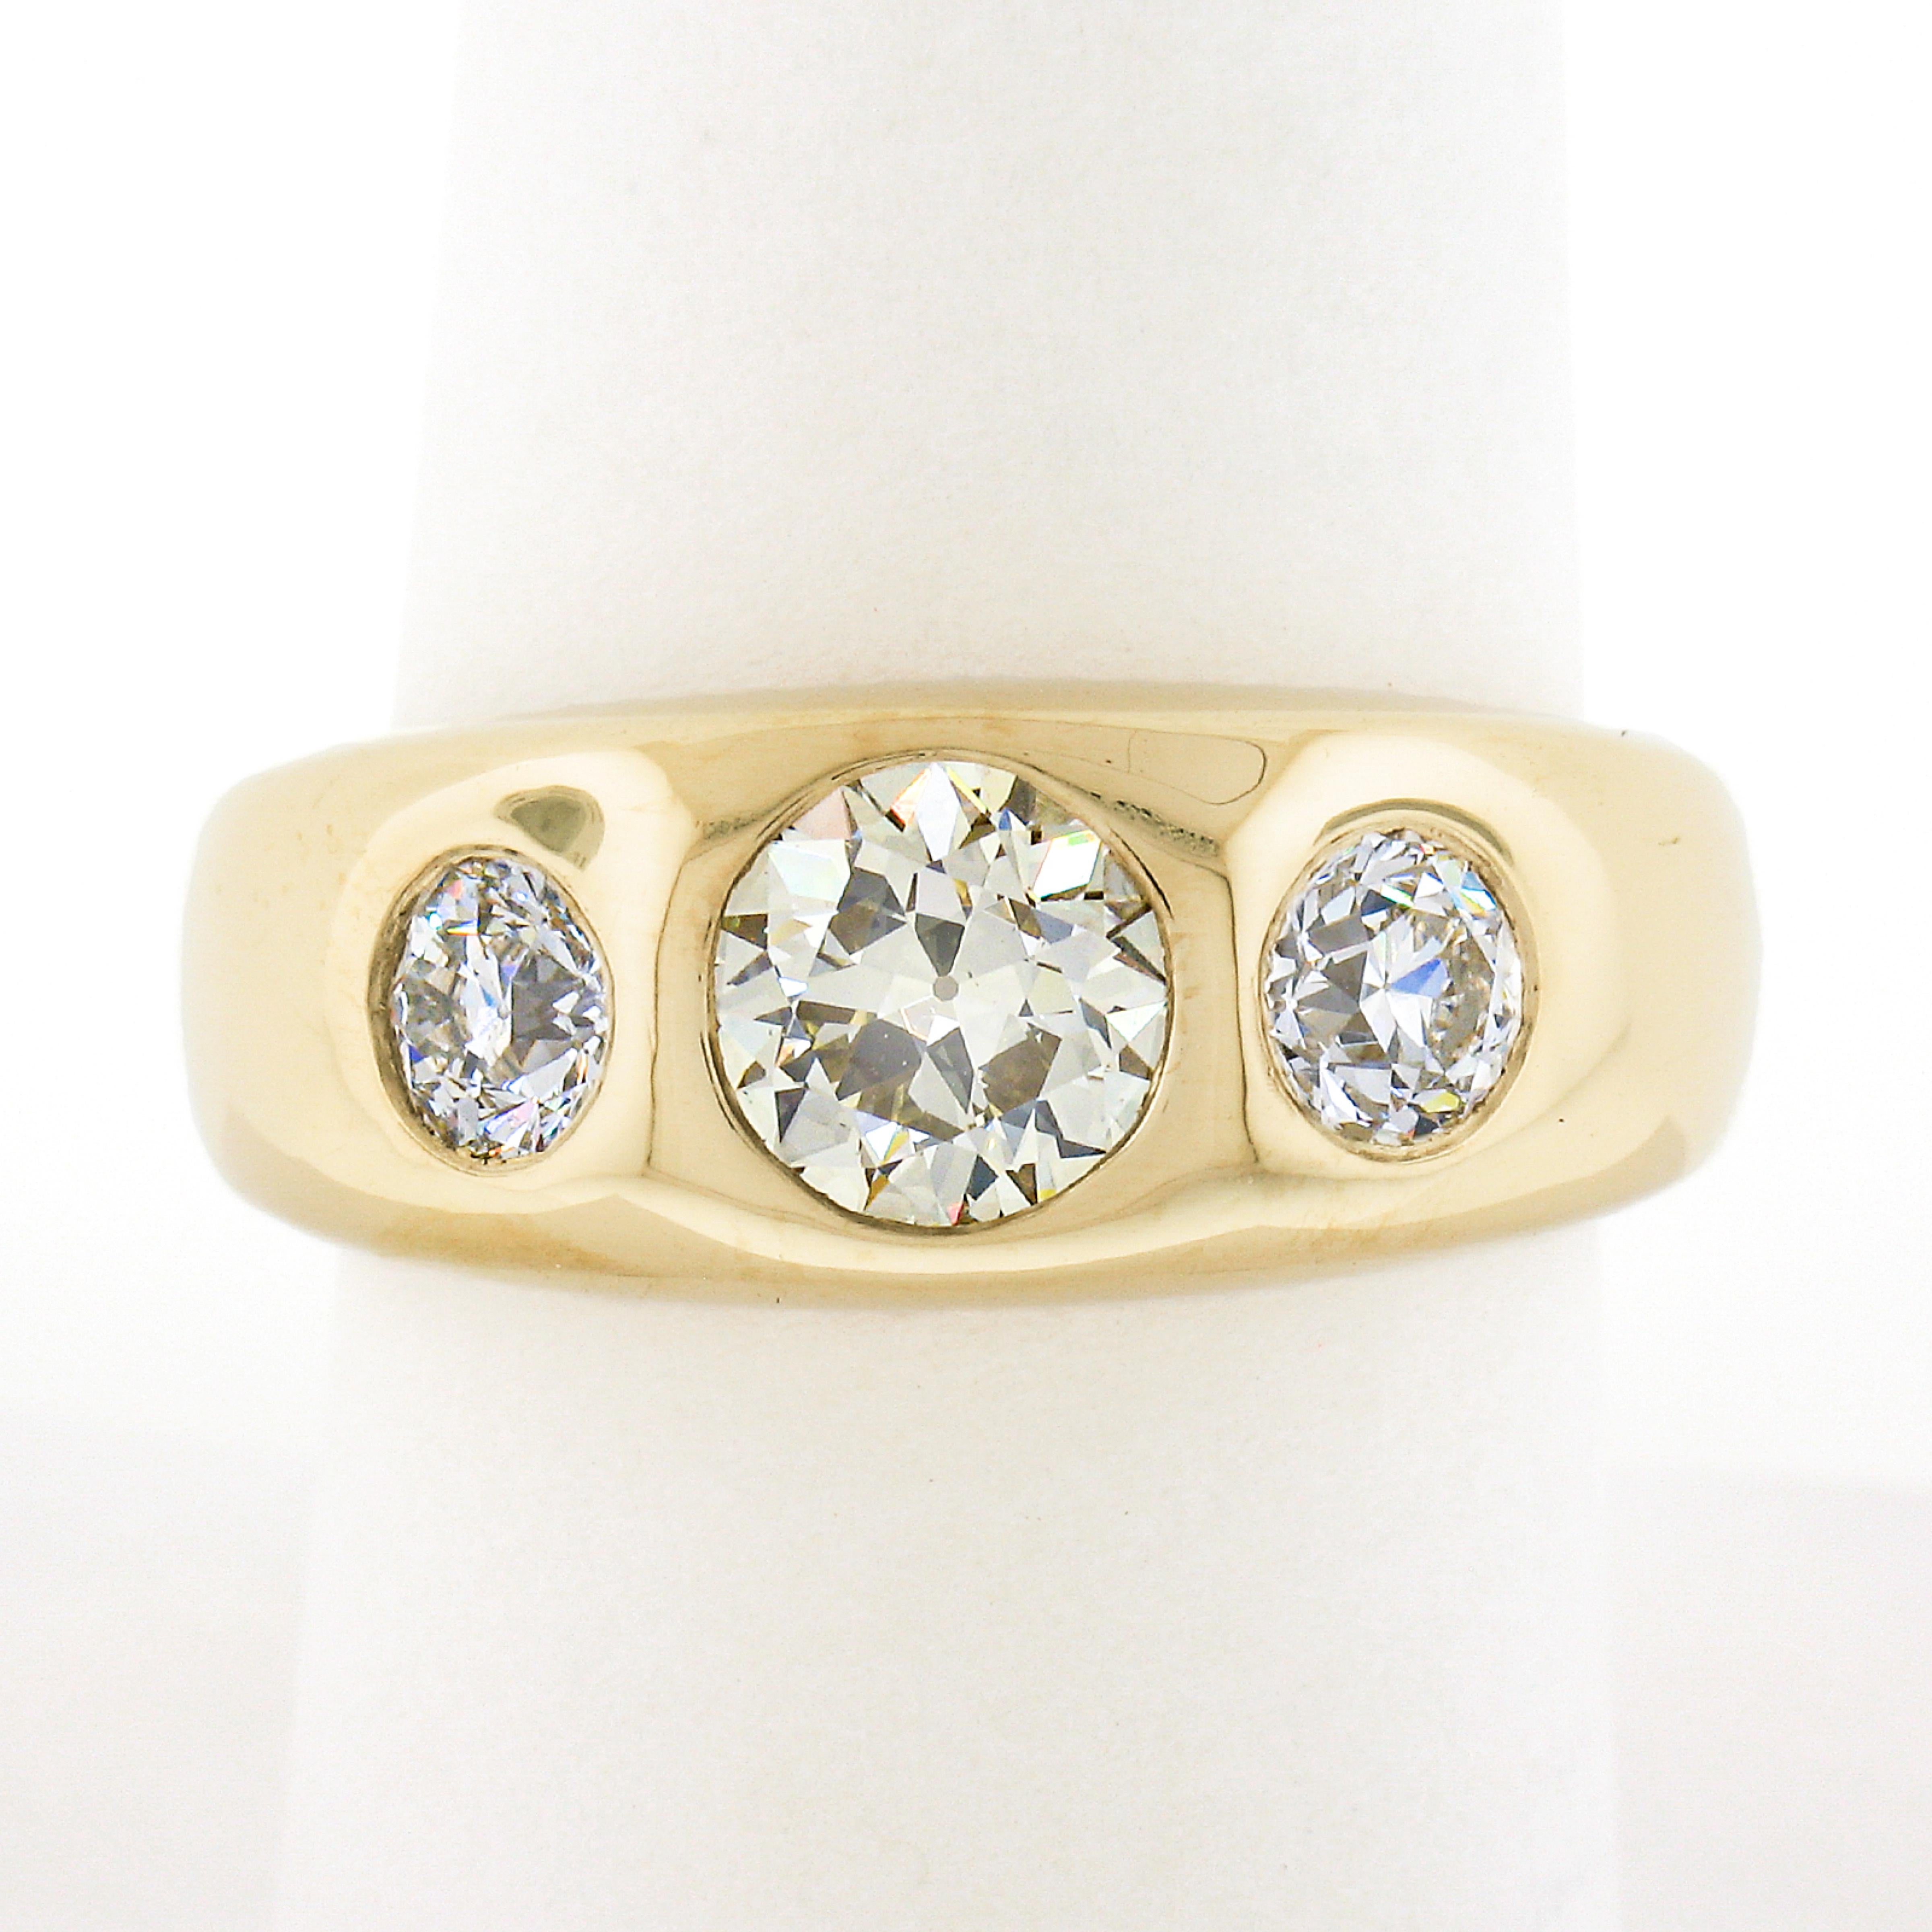 Cette bague à anneau gitane pour homme est nouvellement fabriquée en or jaune 18 carats massif et comporte 3 diamants anciens de très belle qualité, soigneusement sertis à l'affleurement sur sa partie supérieure bombée. Le diamant central a été